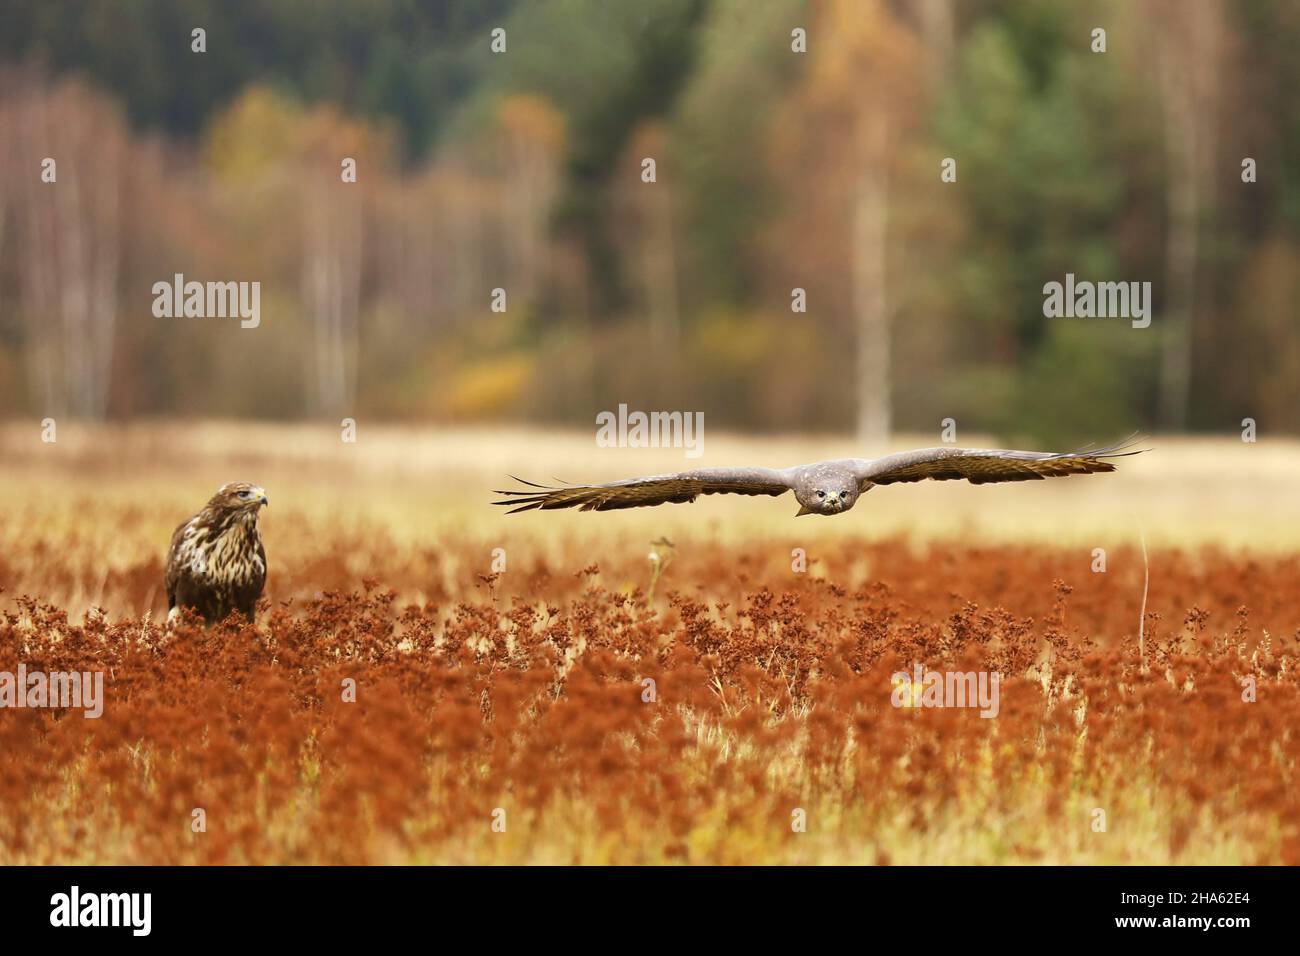 Common buzzard (Buteo buteo) is a medium bird of prey, pait on meadow in autumn Stock Photo